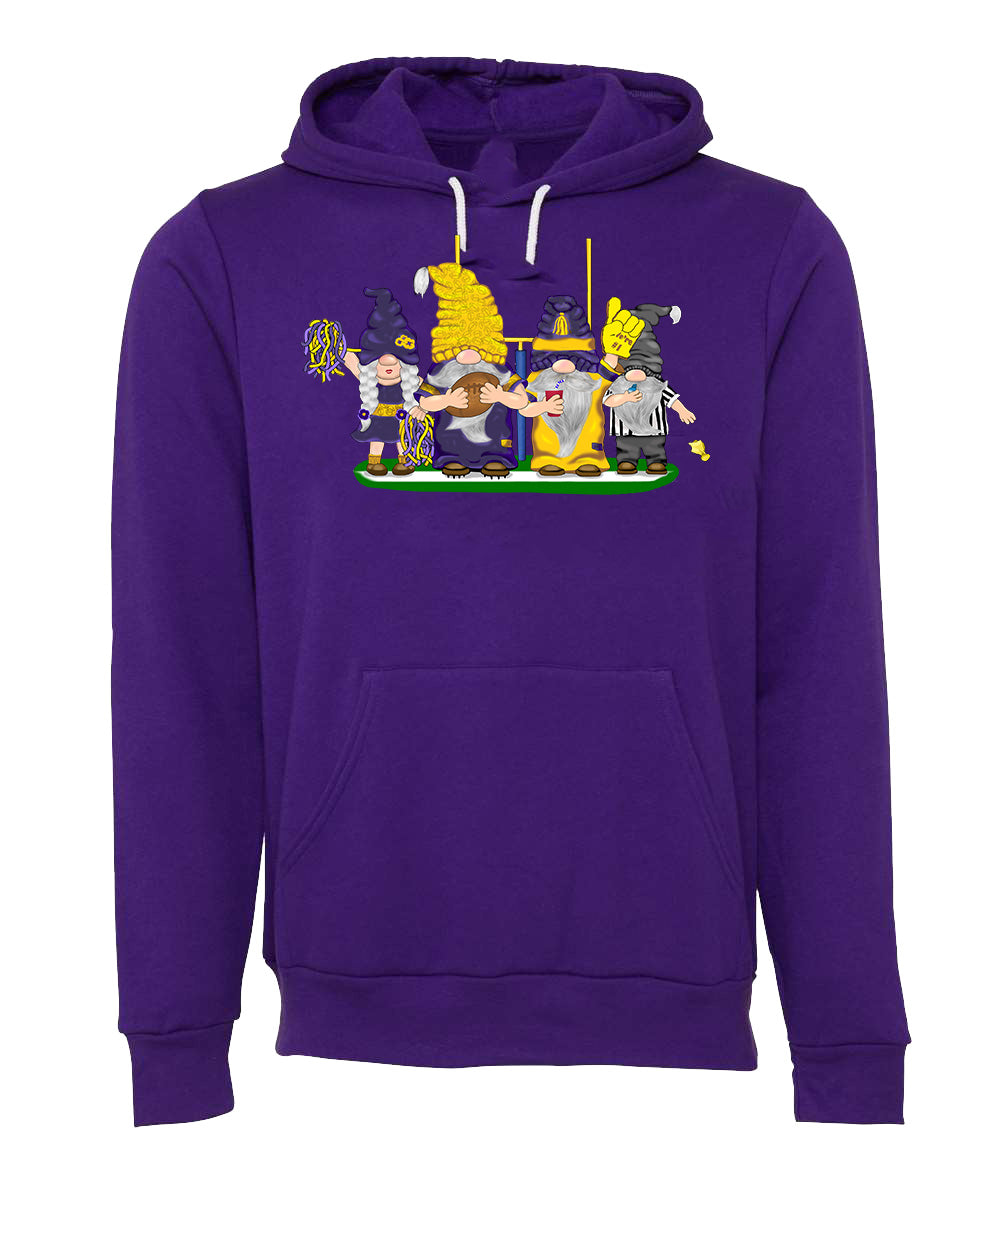 Purple & Gold Football Gnomes (similar to Minnesota) on Unisex Hoodie